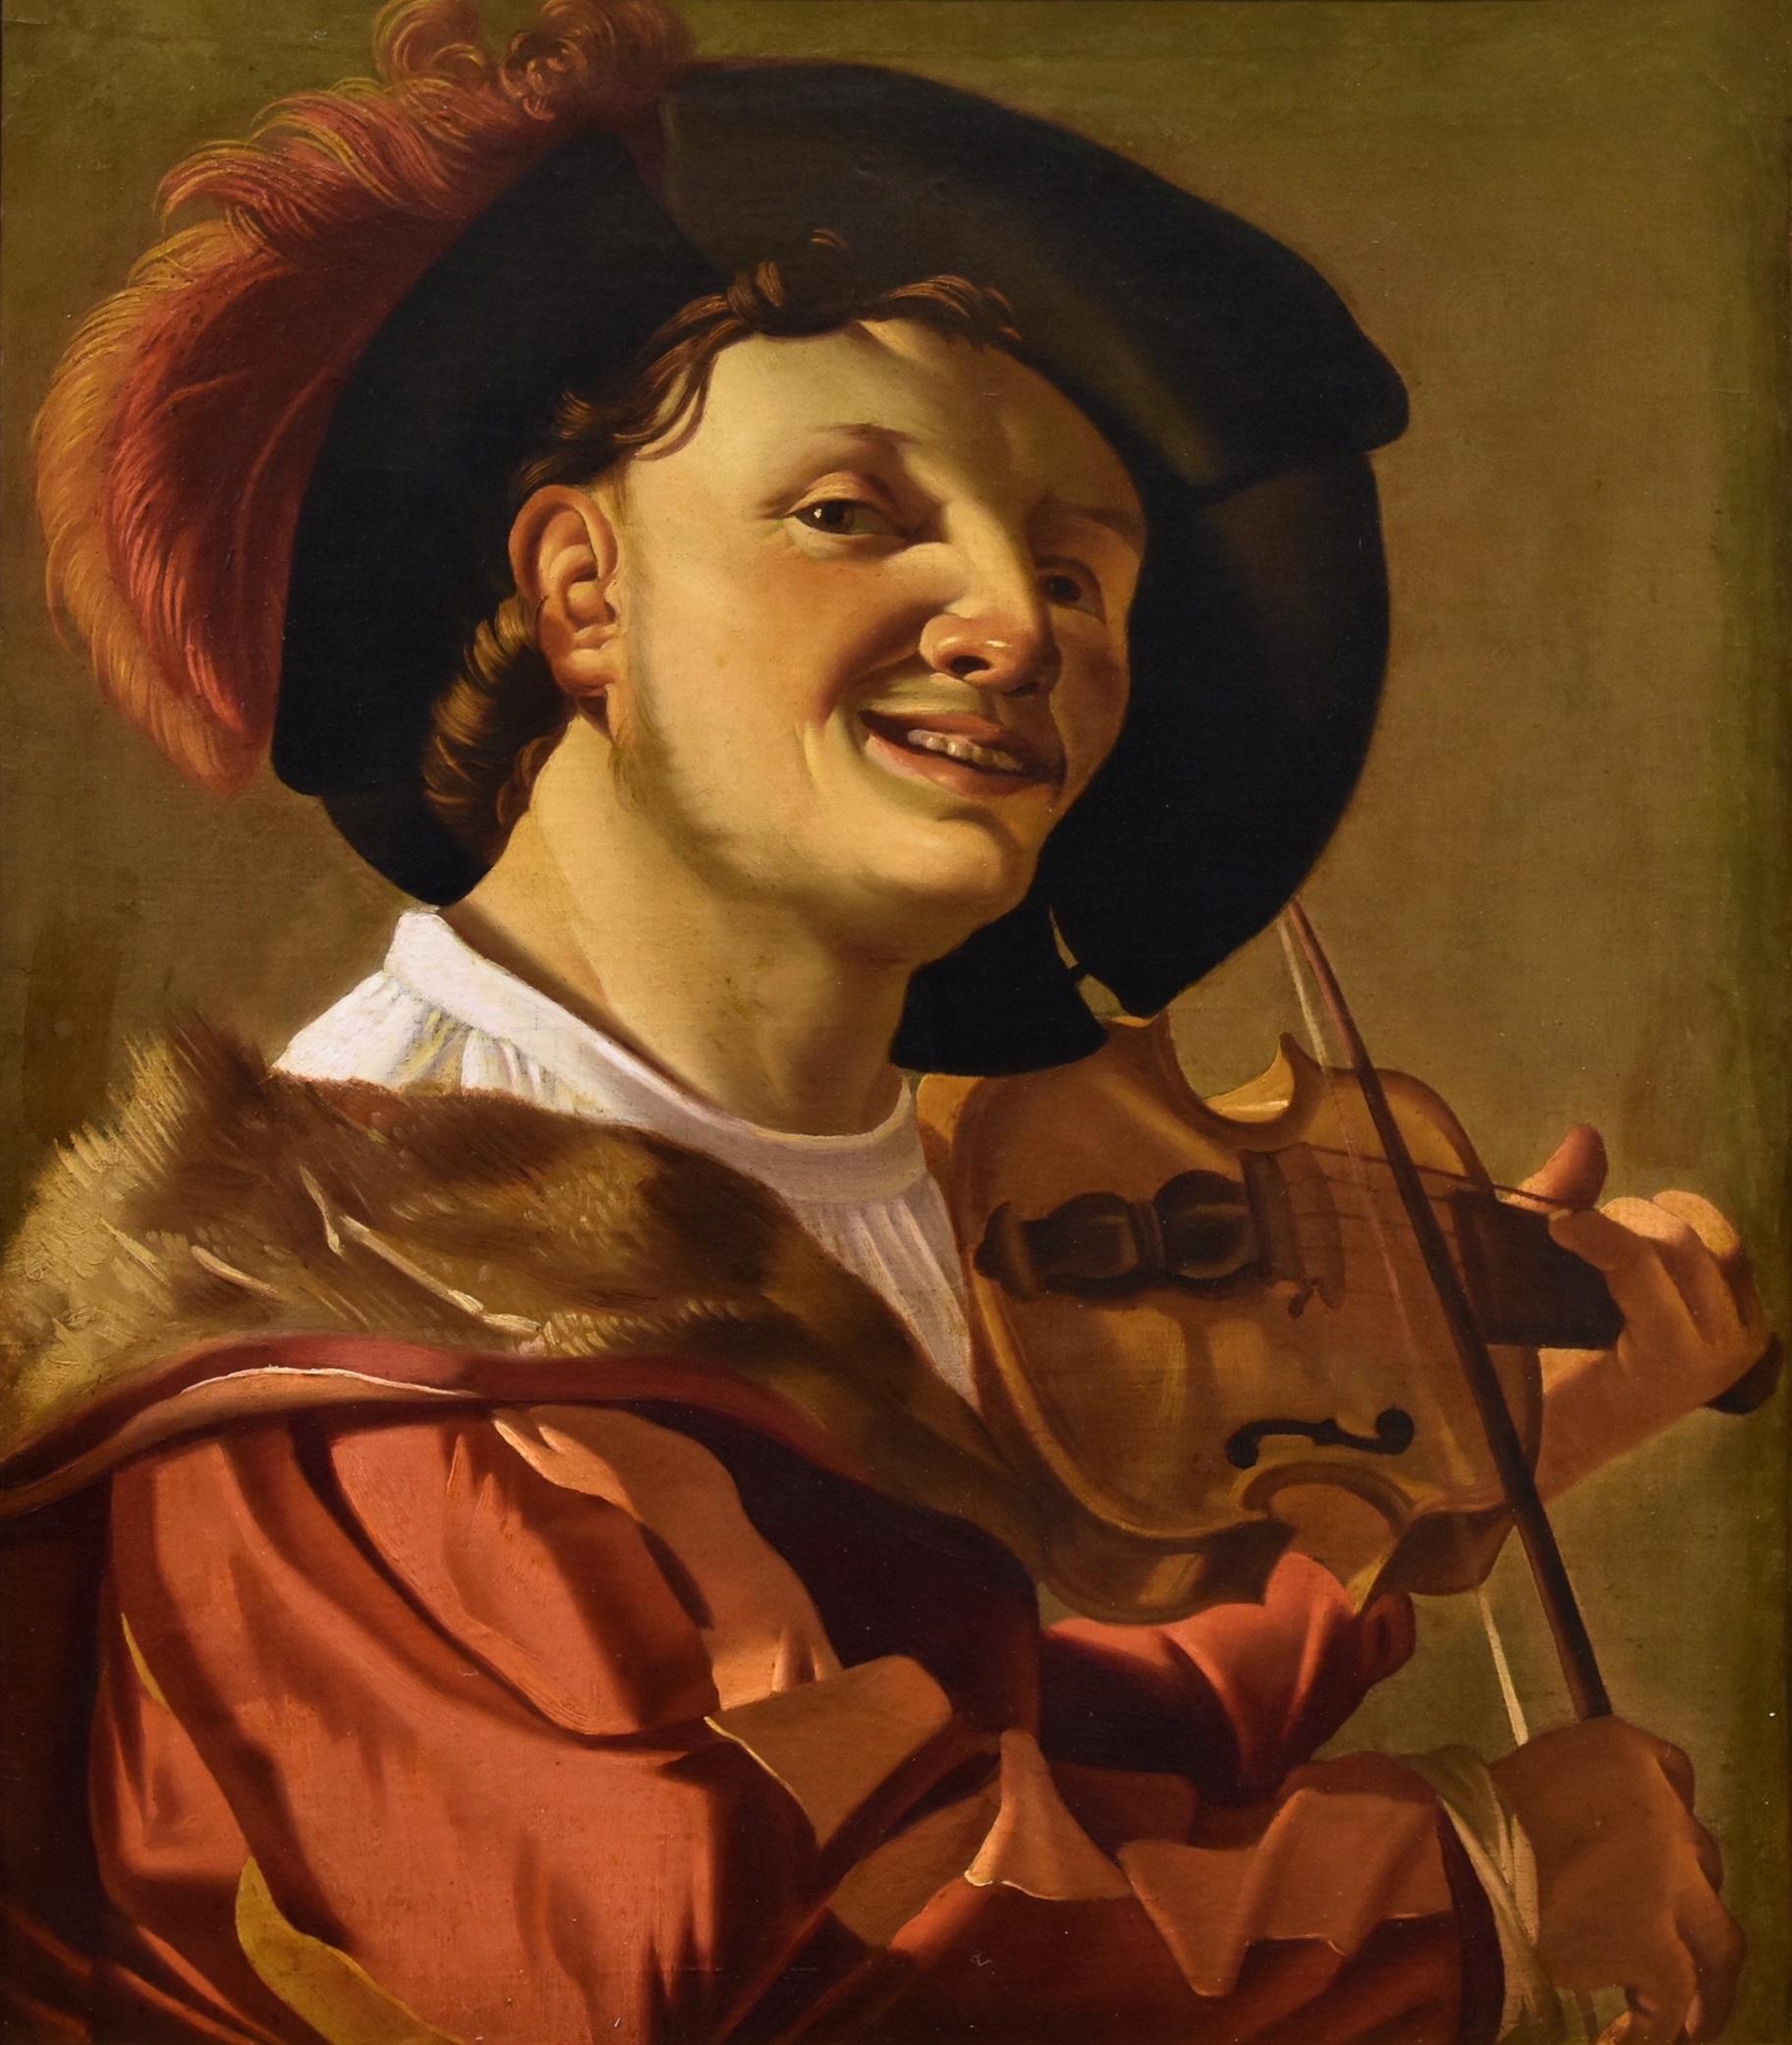 Joueur de violon Ter Brugghen Peinture Huile sur toile 17ème siècle Flemish Vieux maître - Painting de Hendrick Ter Brugghen (the Hague 1588-1629 Utrecht) 